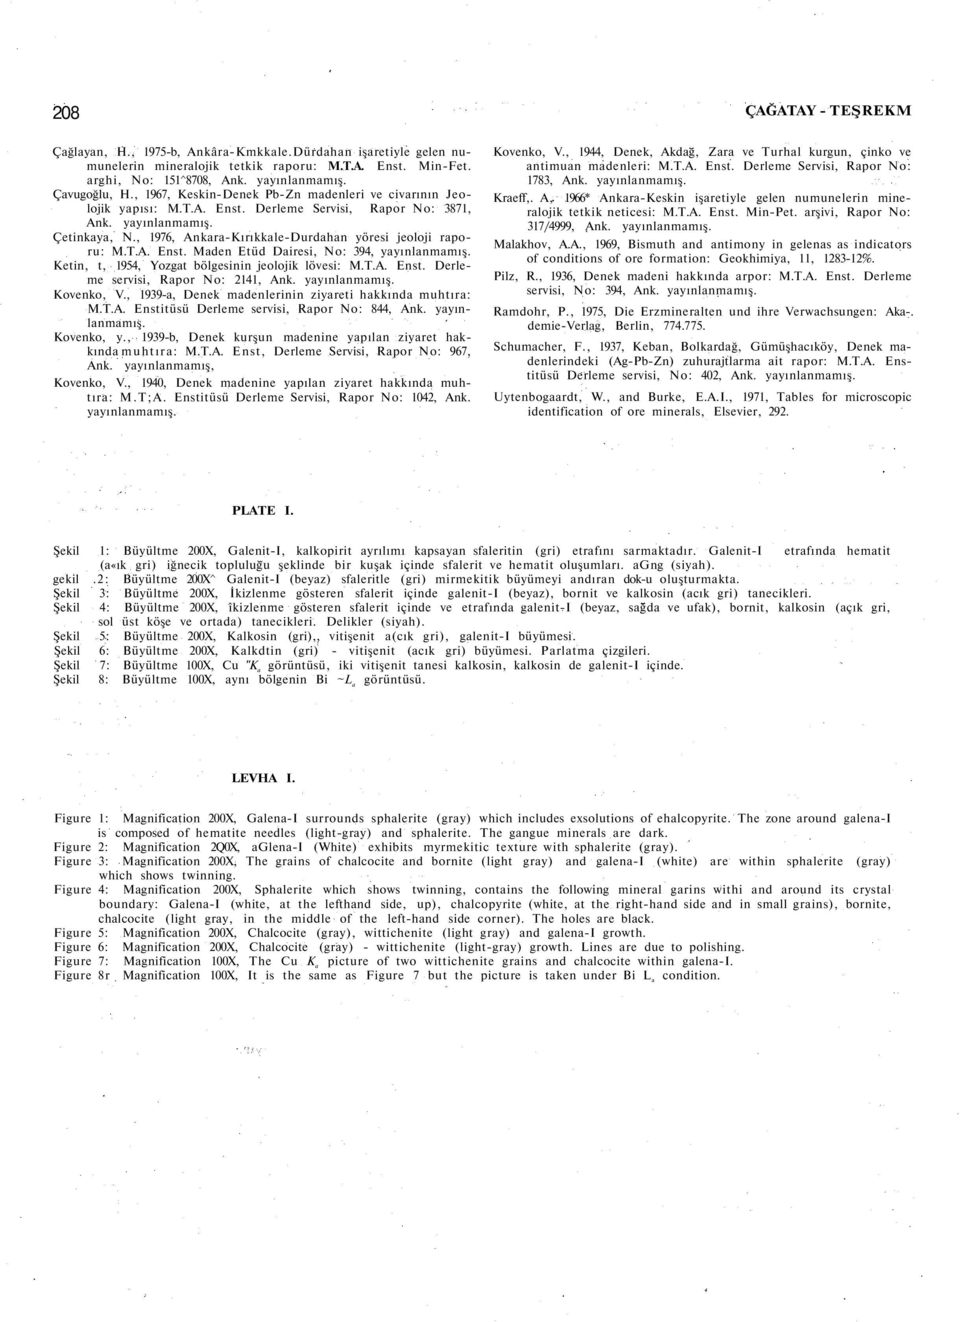 , 1976, Ankara-Kırıkkale-Durdahan yöresi jeoloji raporu: M.T.A. Enst. Maden Etüd Dairesi, No: 394, yayınlanmamış. Ketin, t, 1954, Yozgat bölgesinin jeolojik lövesi: M.T.A. Enst. Derleme servisi, Rapor No: 2141, Ank.